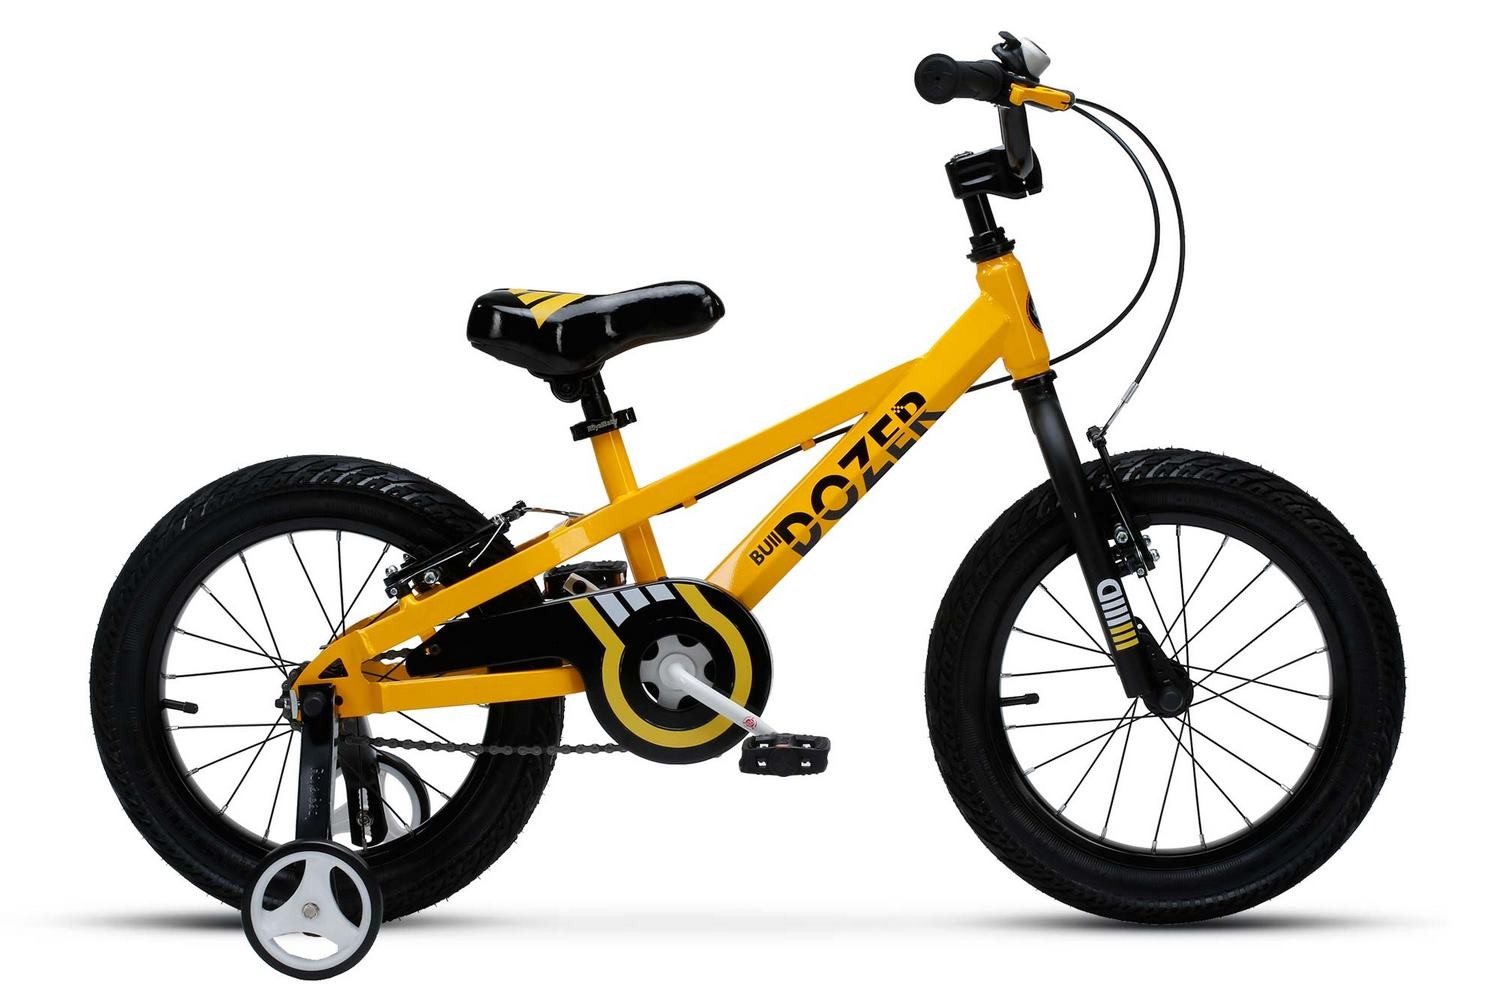  Отзывы о Детском велосипеде Royal Baby Bull Dozer 18" (2020) 2020